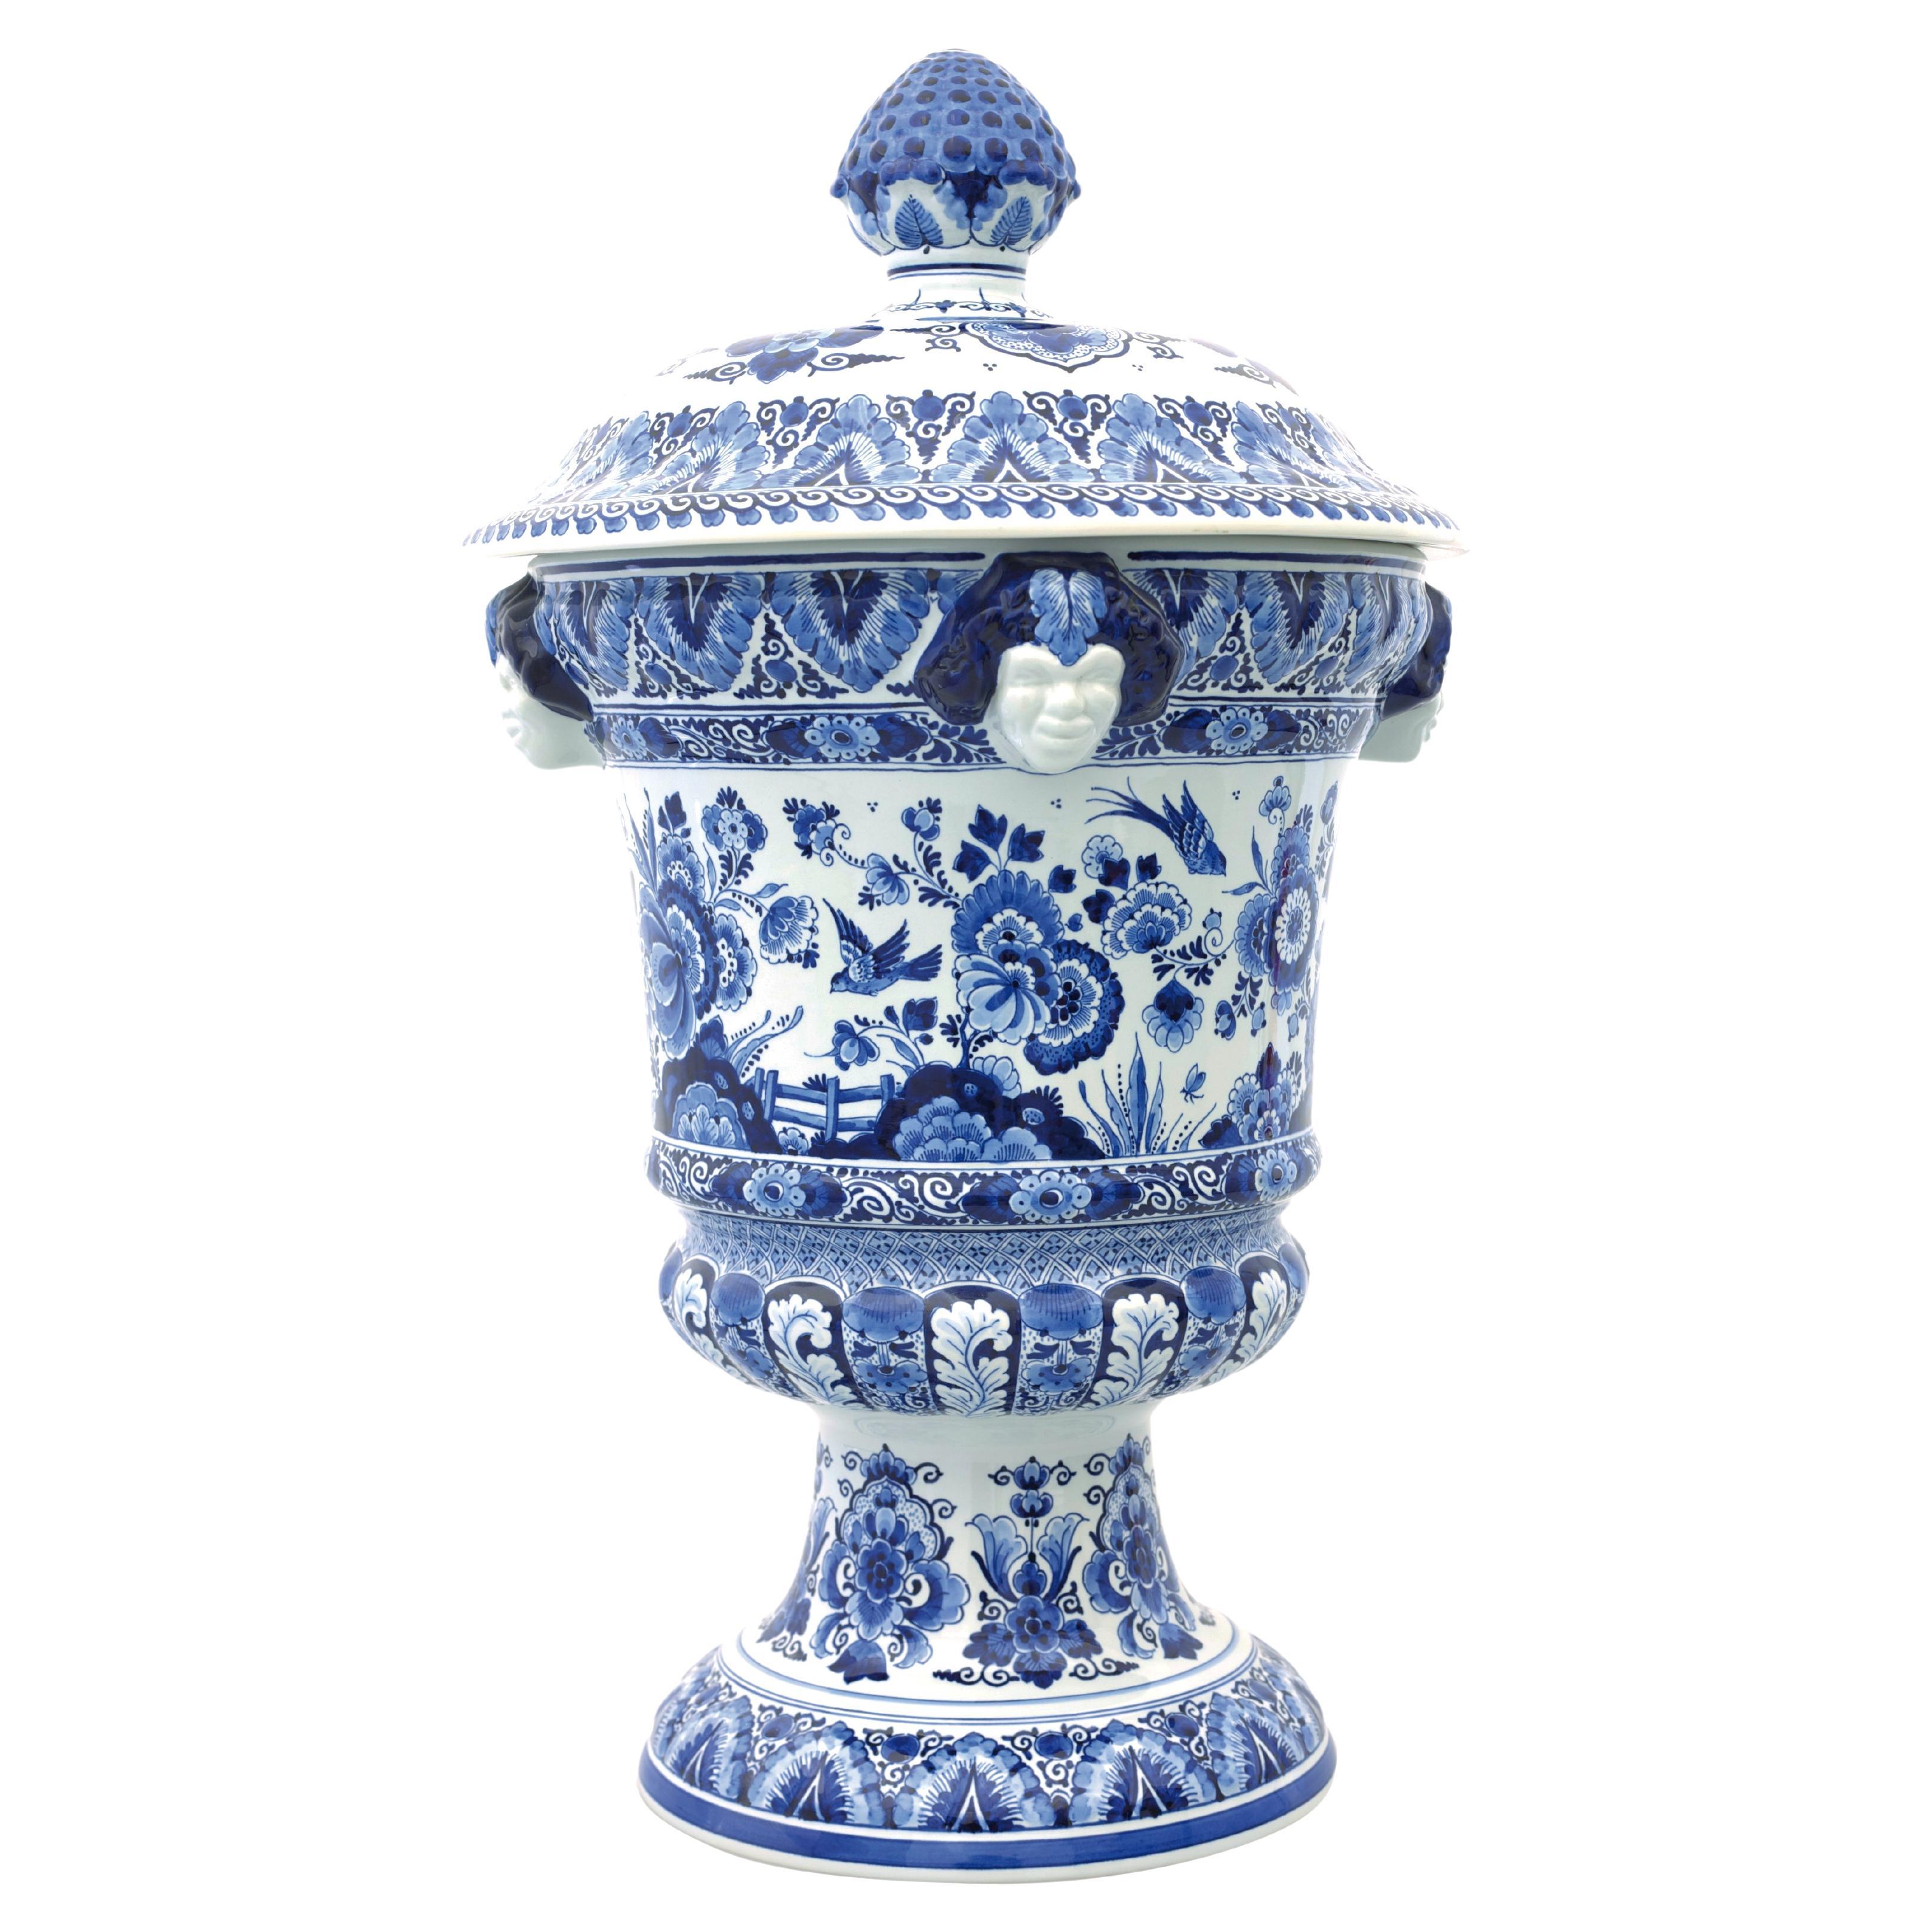 Niederländisch Delft Blau handbemalt Satyr Vase Blume/Vogel von Royal Delft, Orig. Blau 